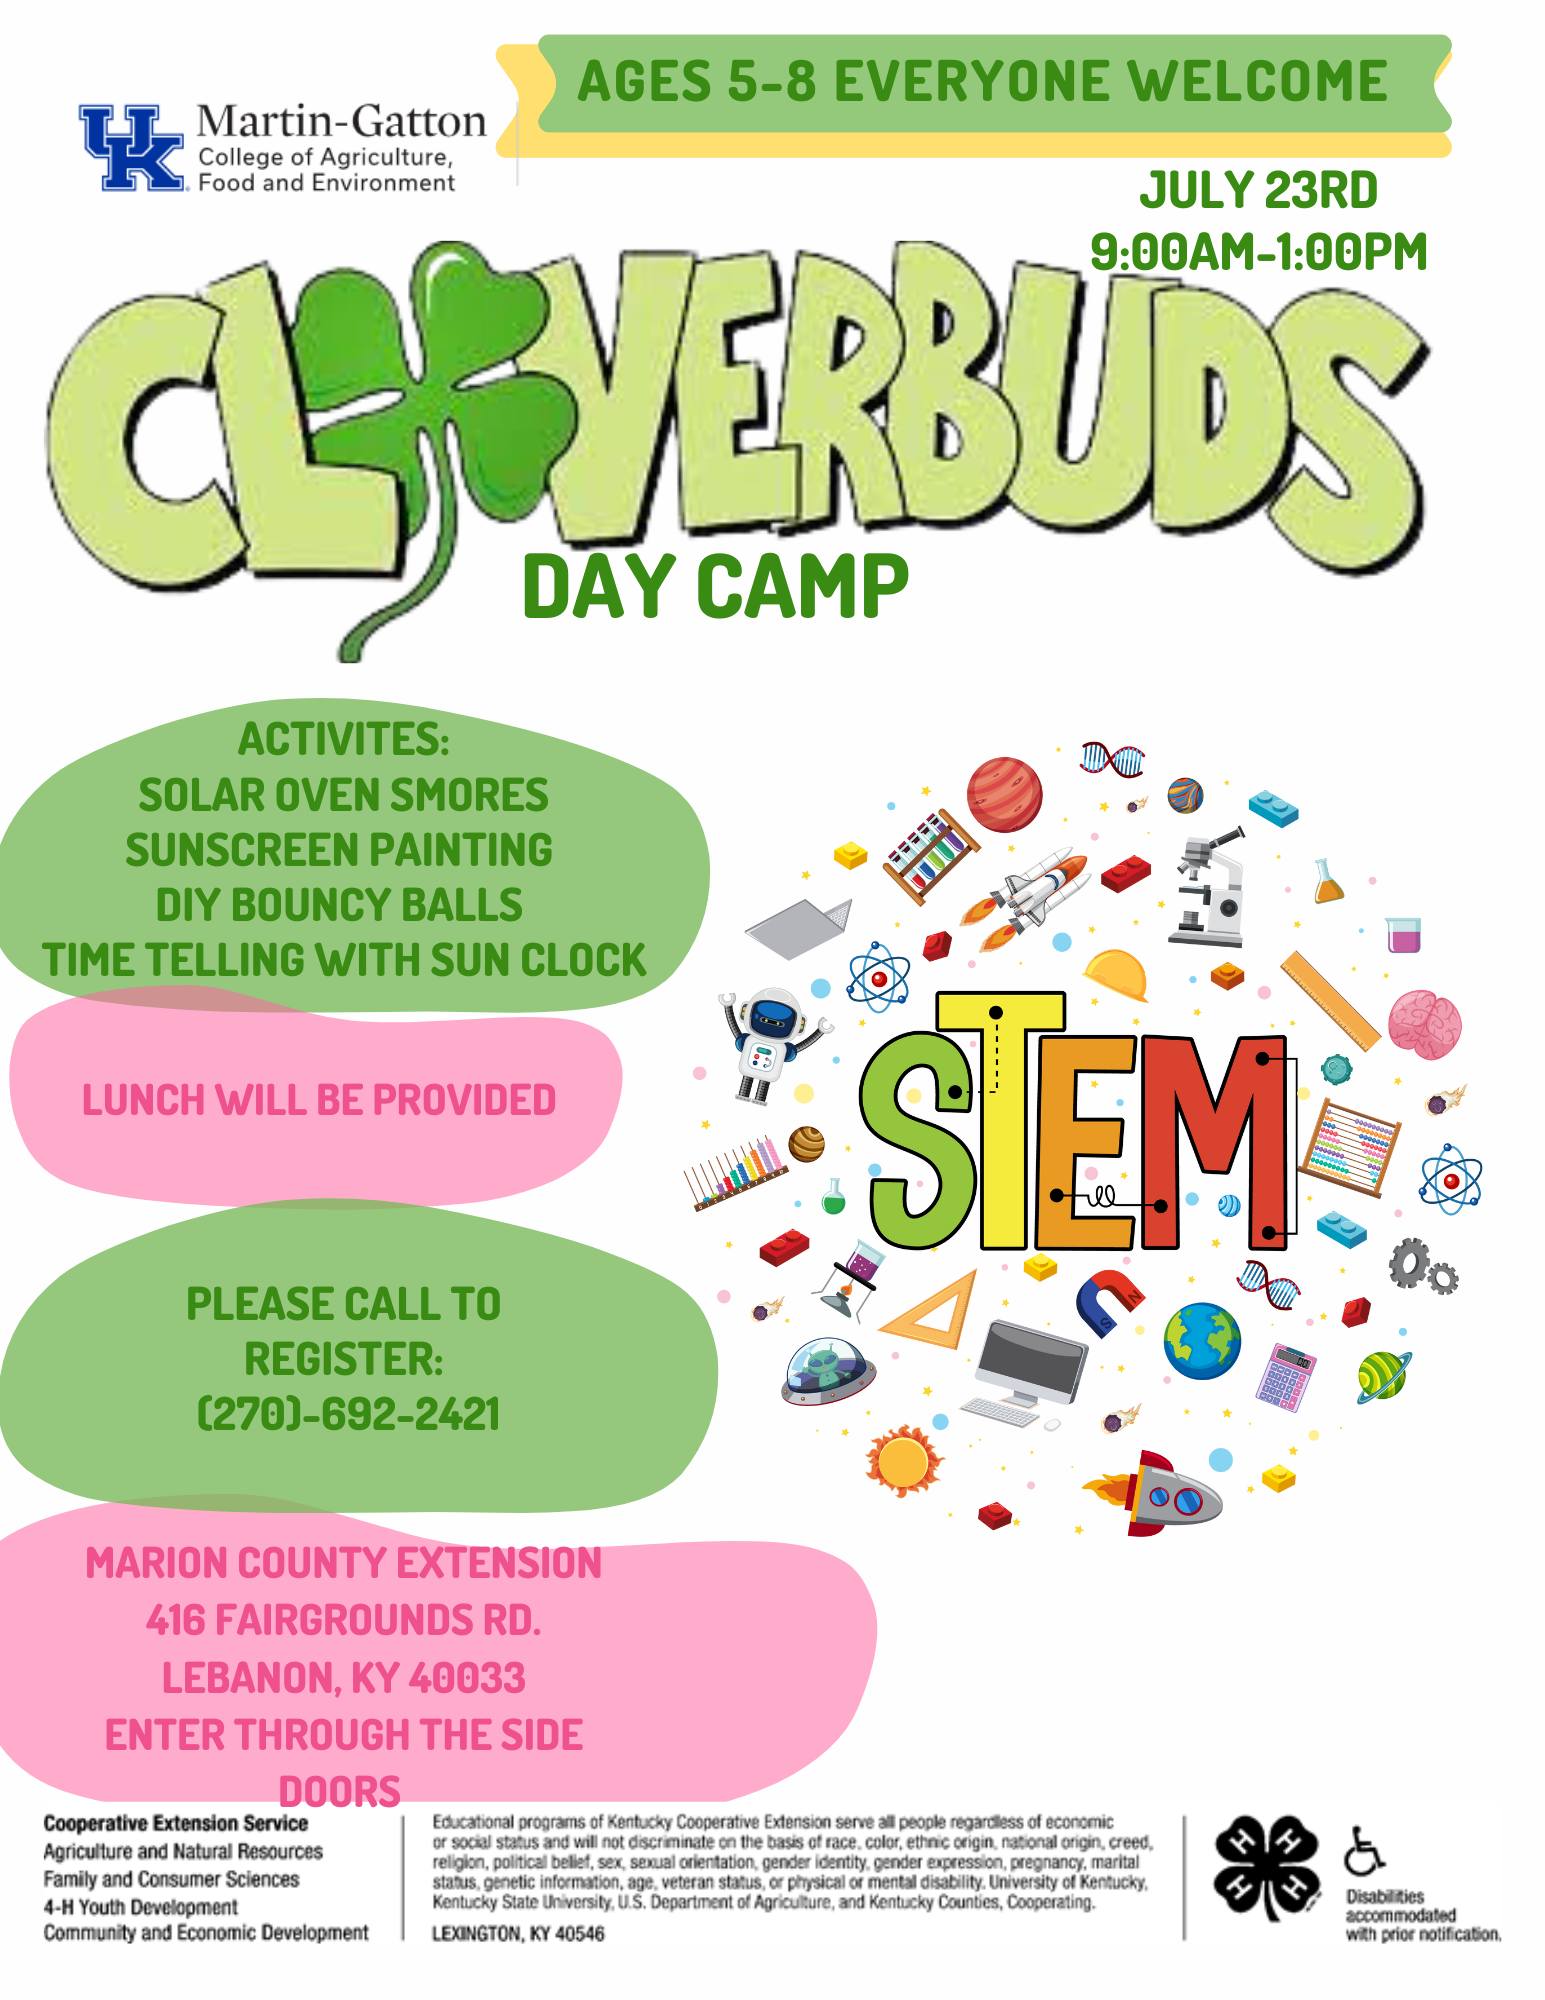 Cloverbuds STEM Camp